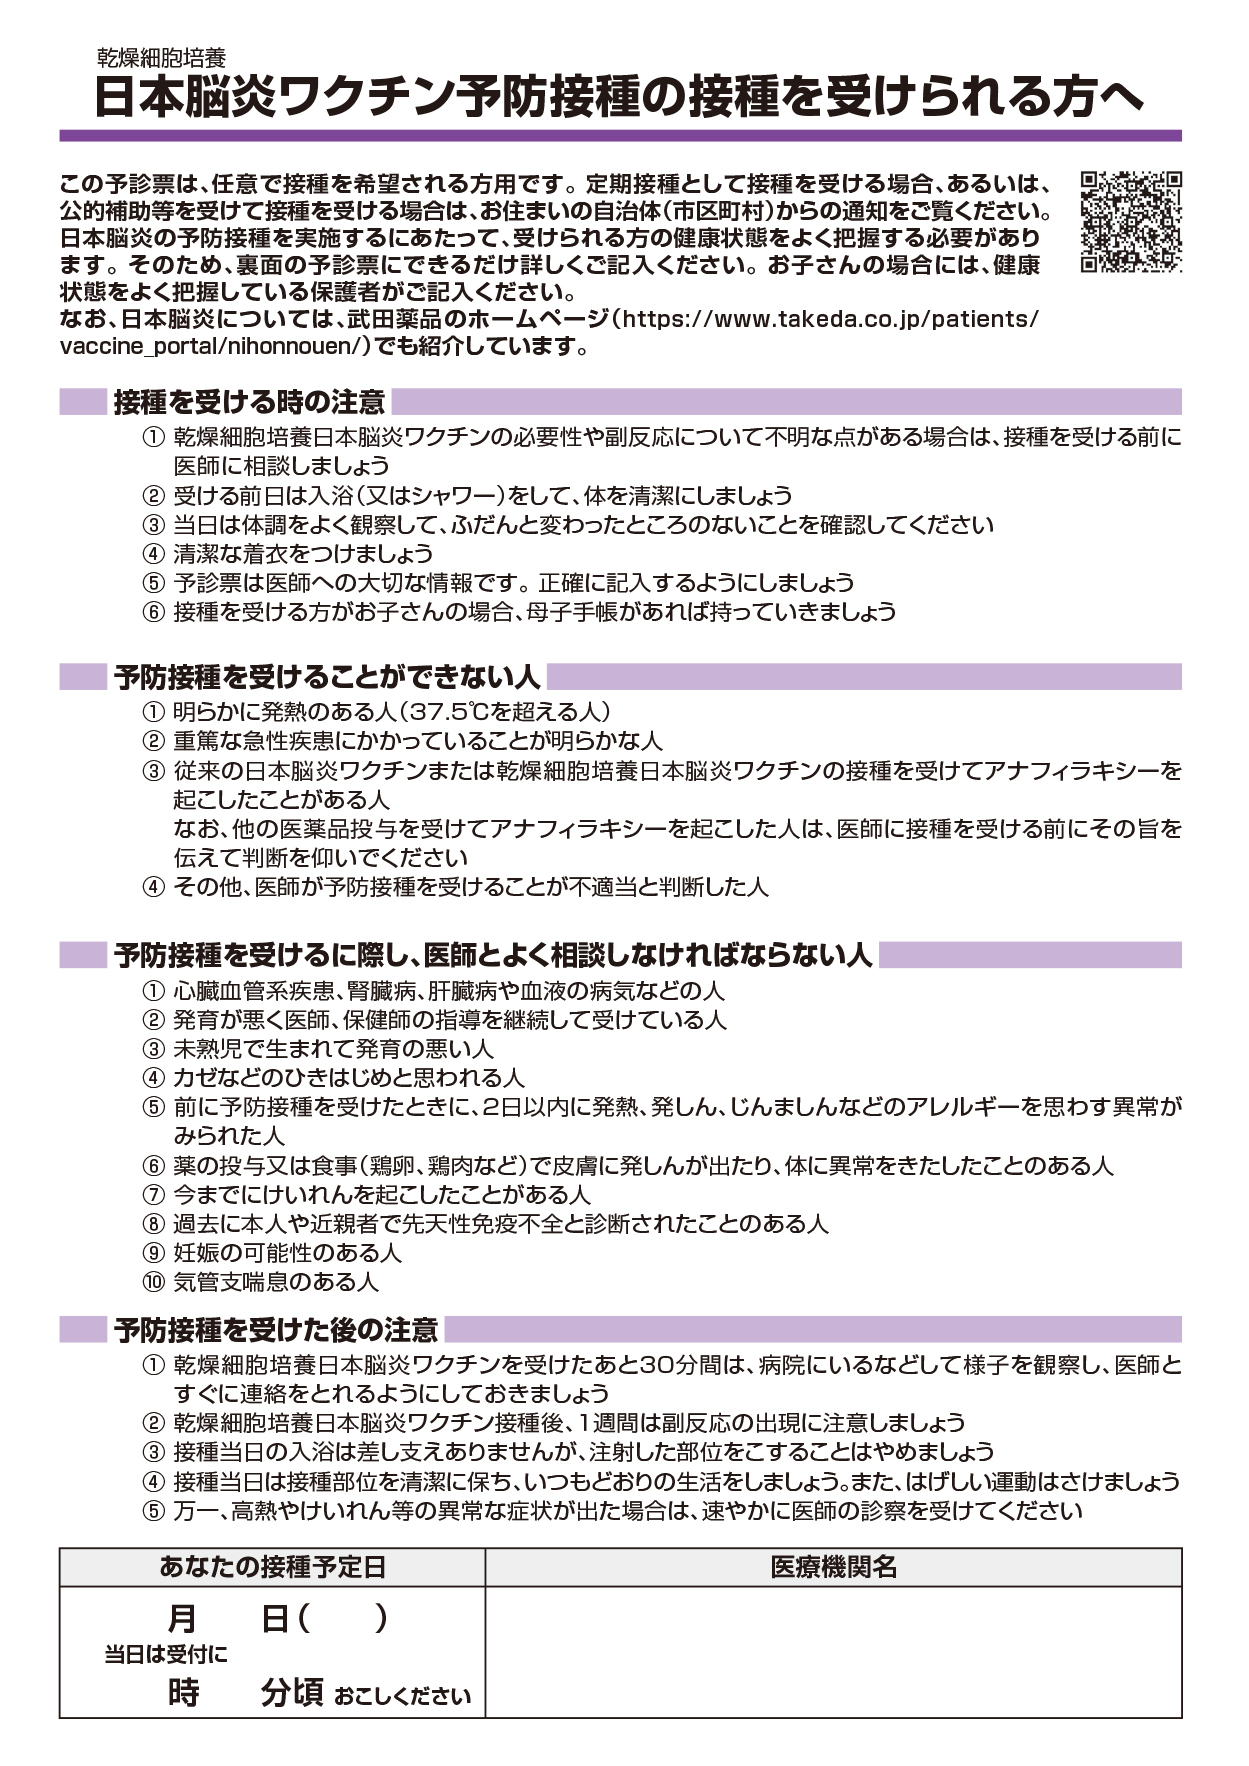 日本脳炎ワクチン予診票